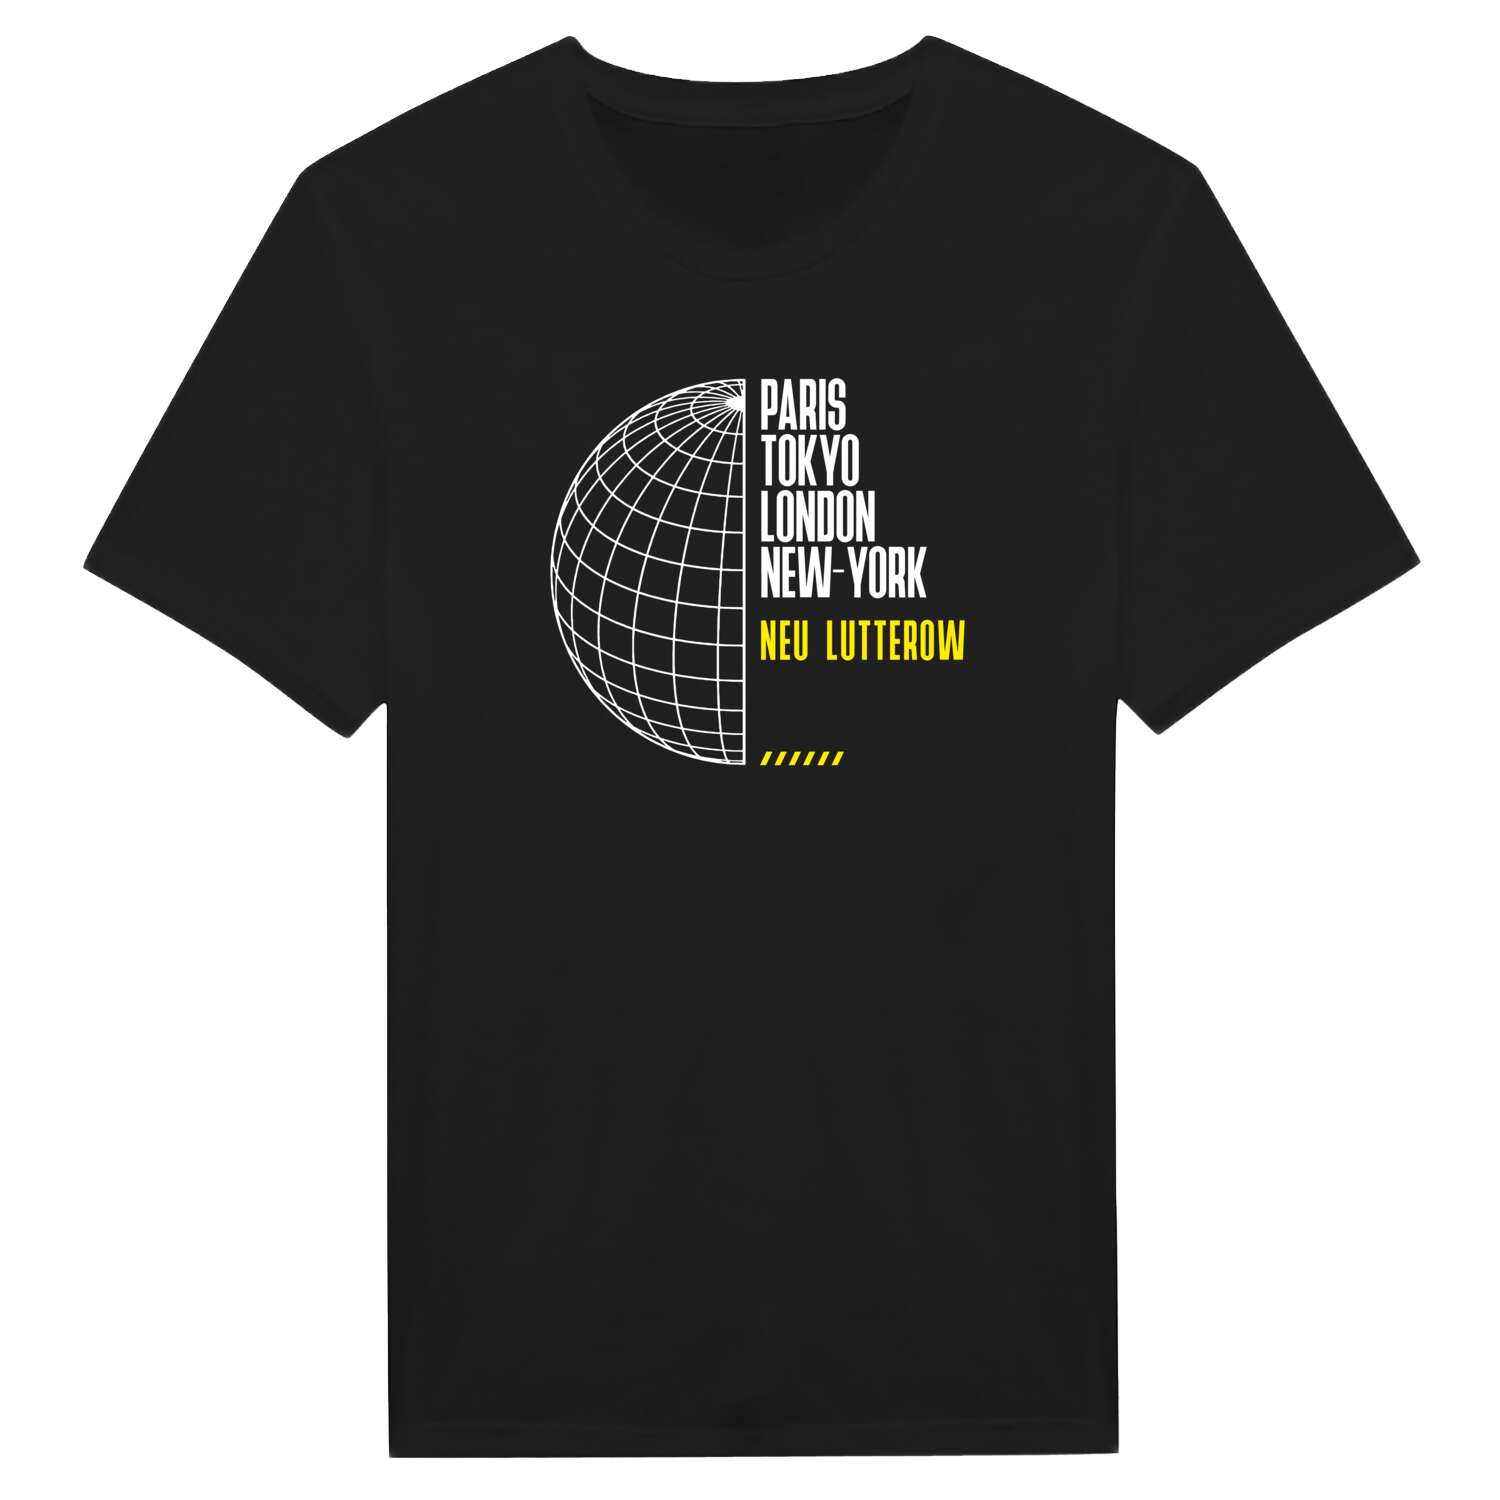 Neu Lutterow T-Shirt »Paris Tokyo London«